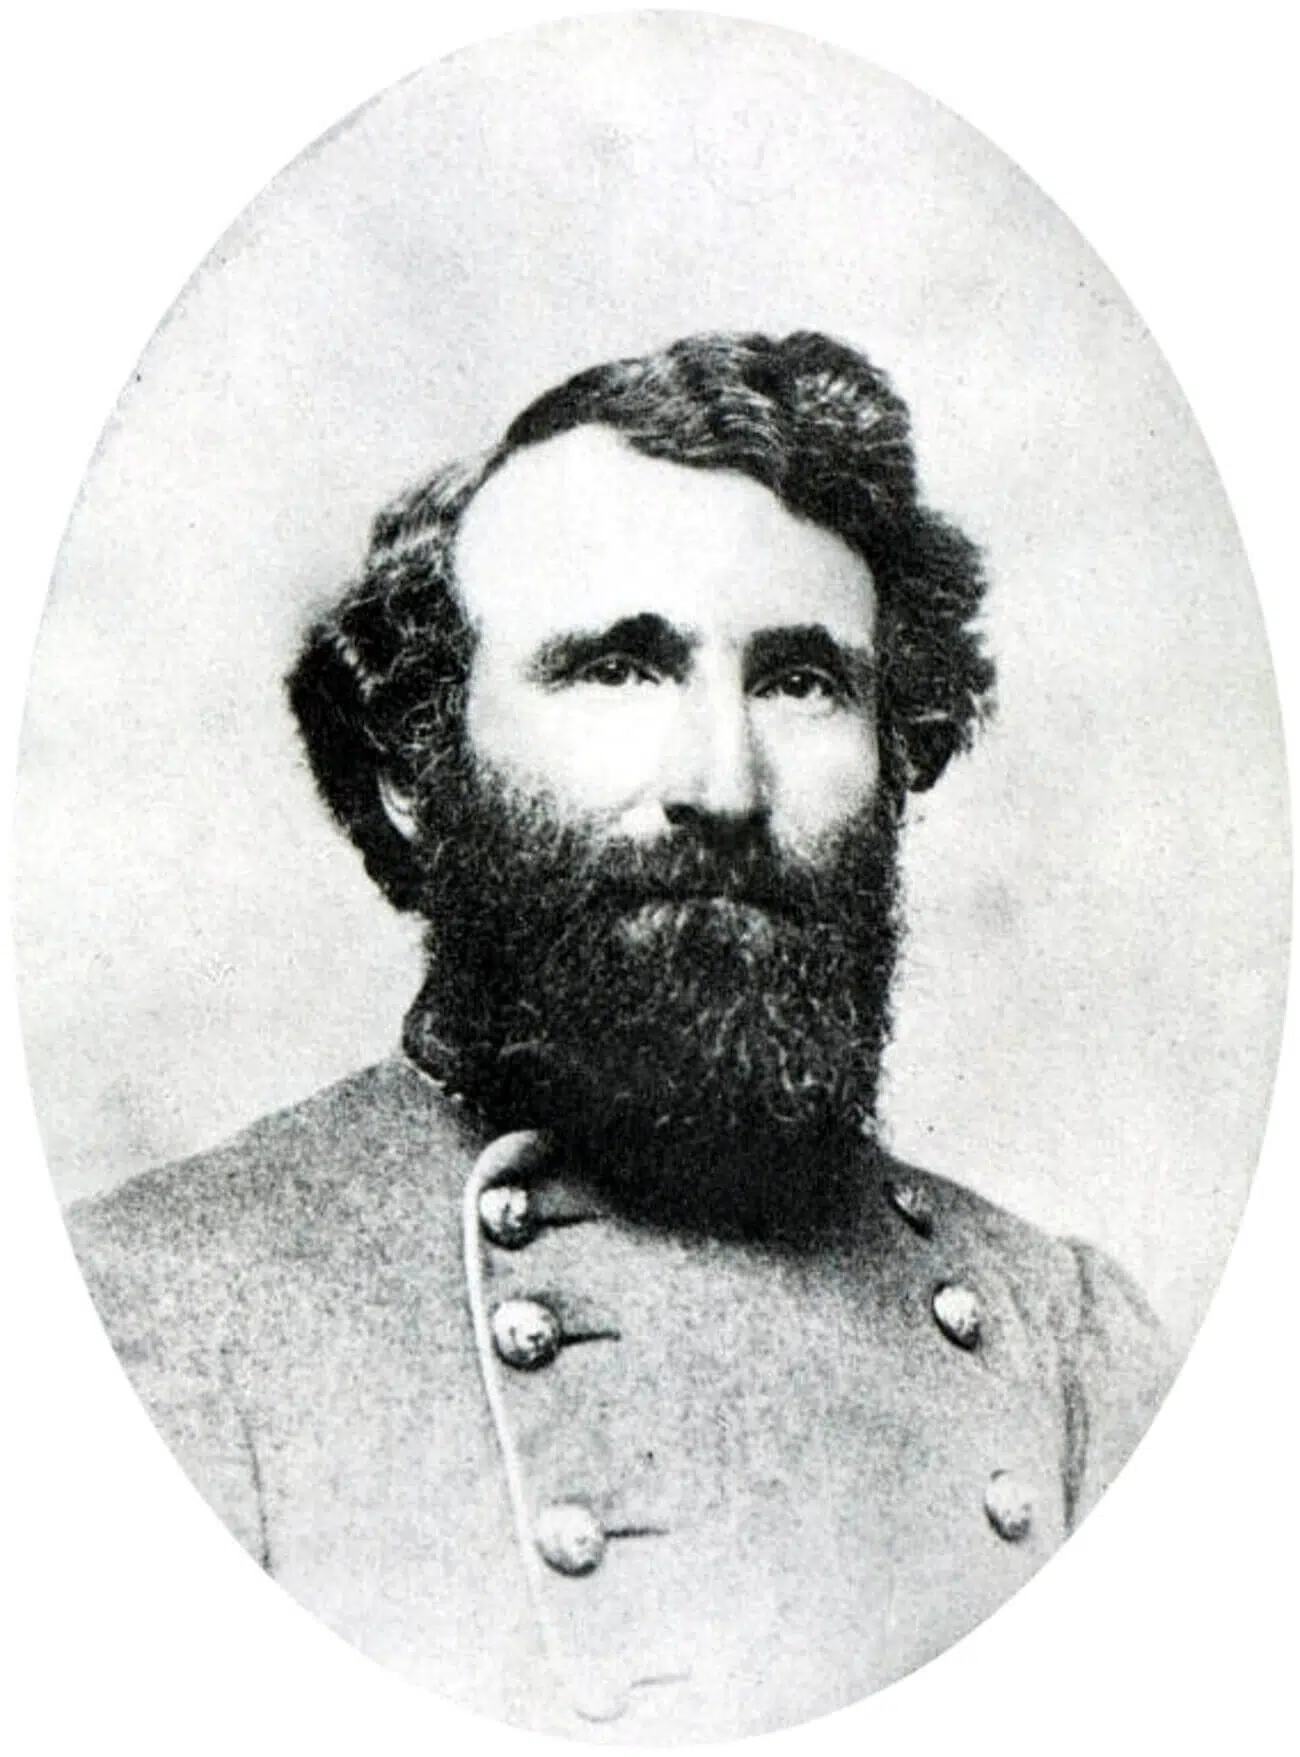 William Booth Taliaferro